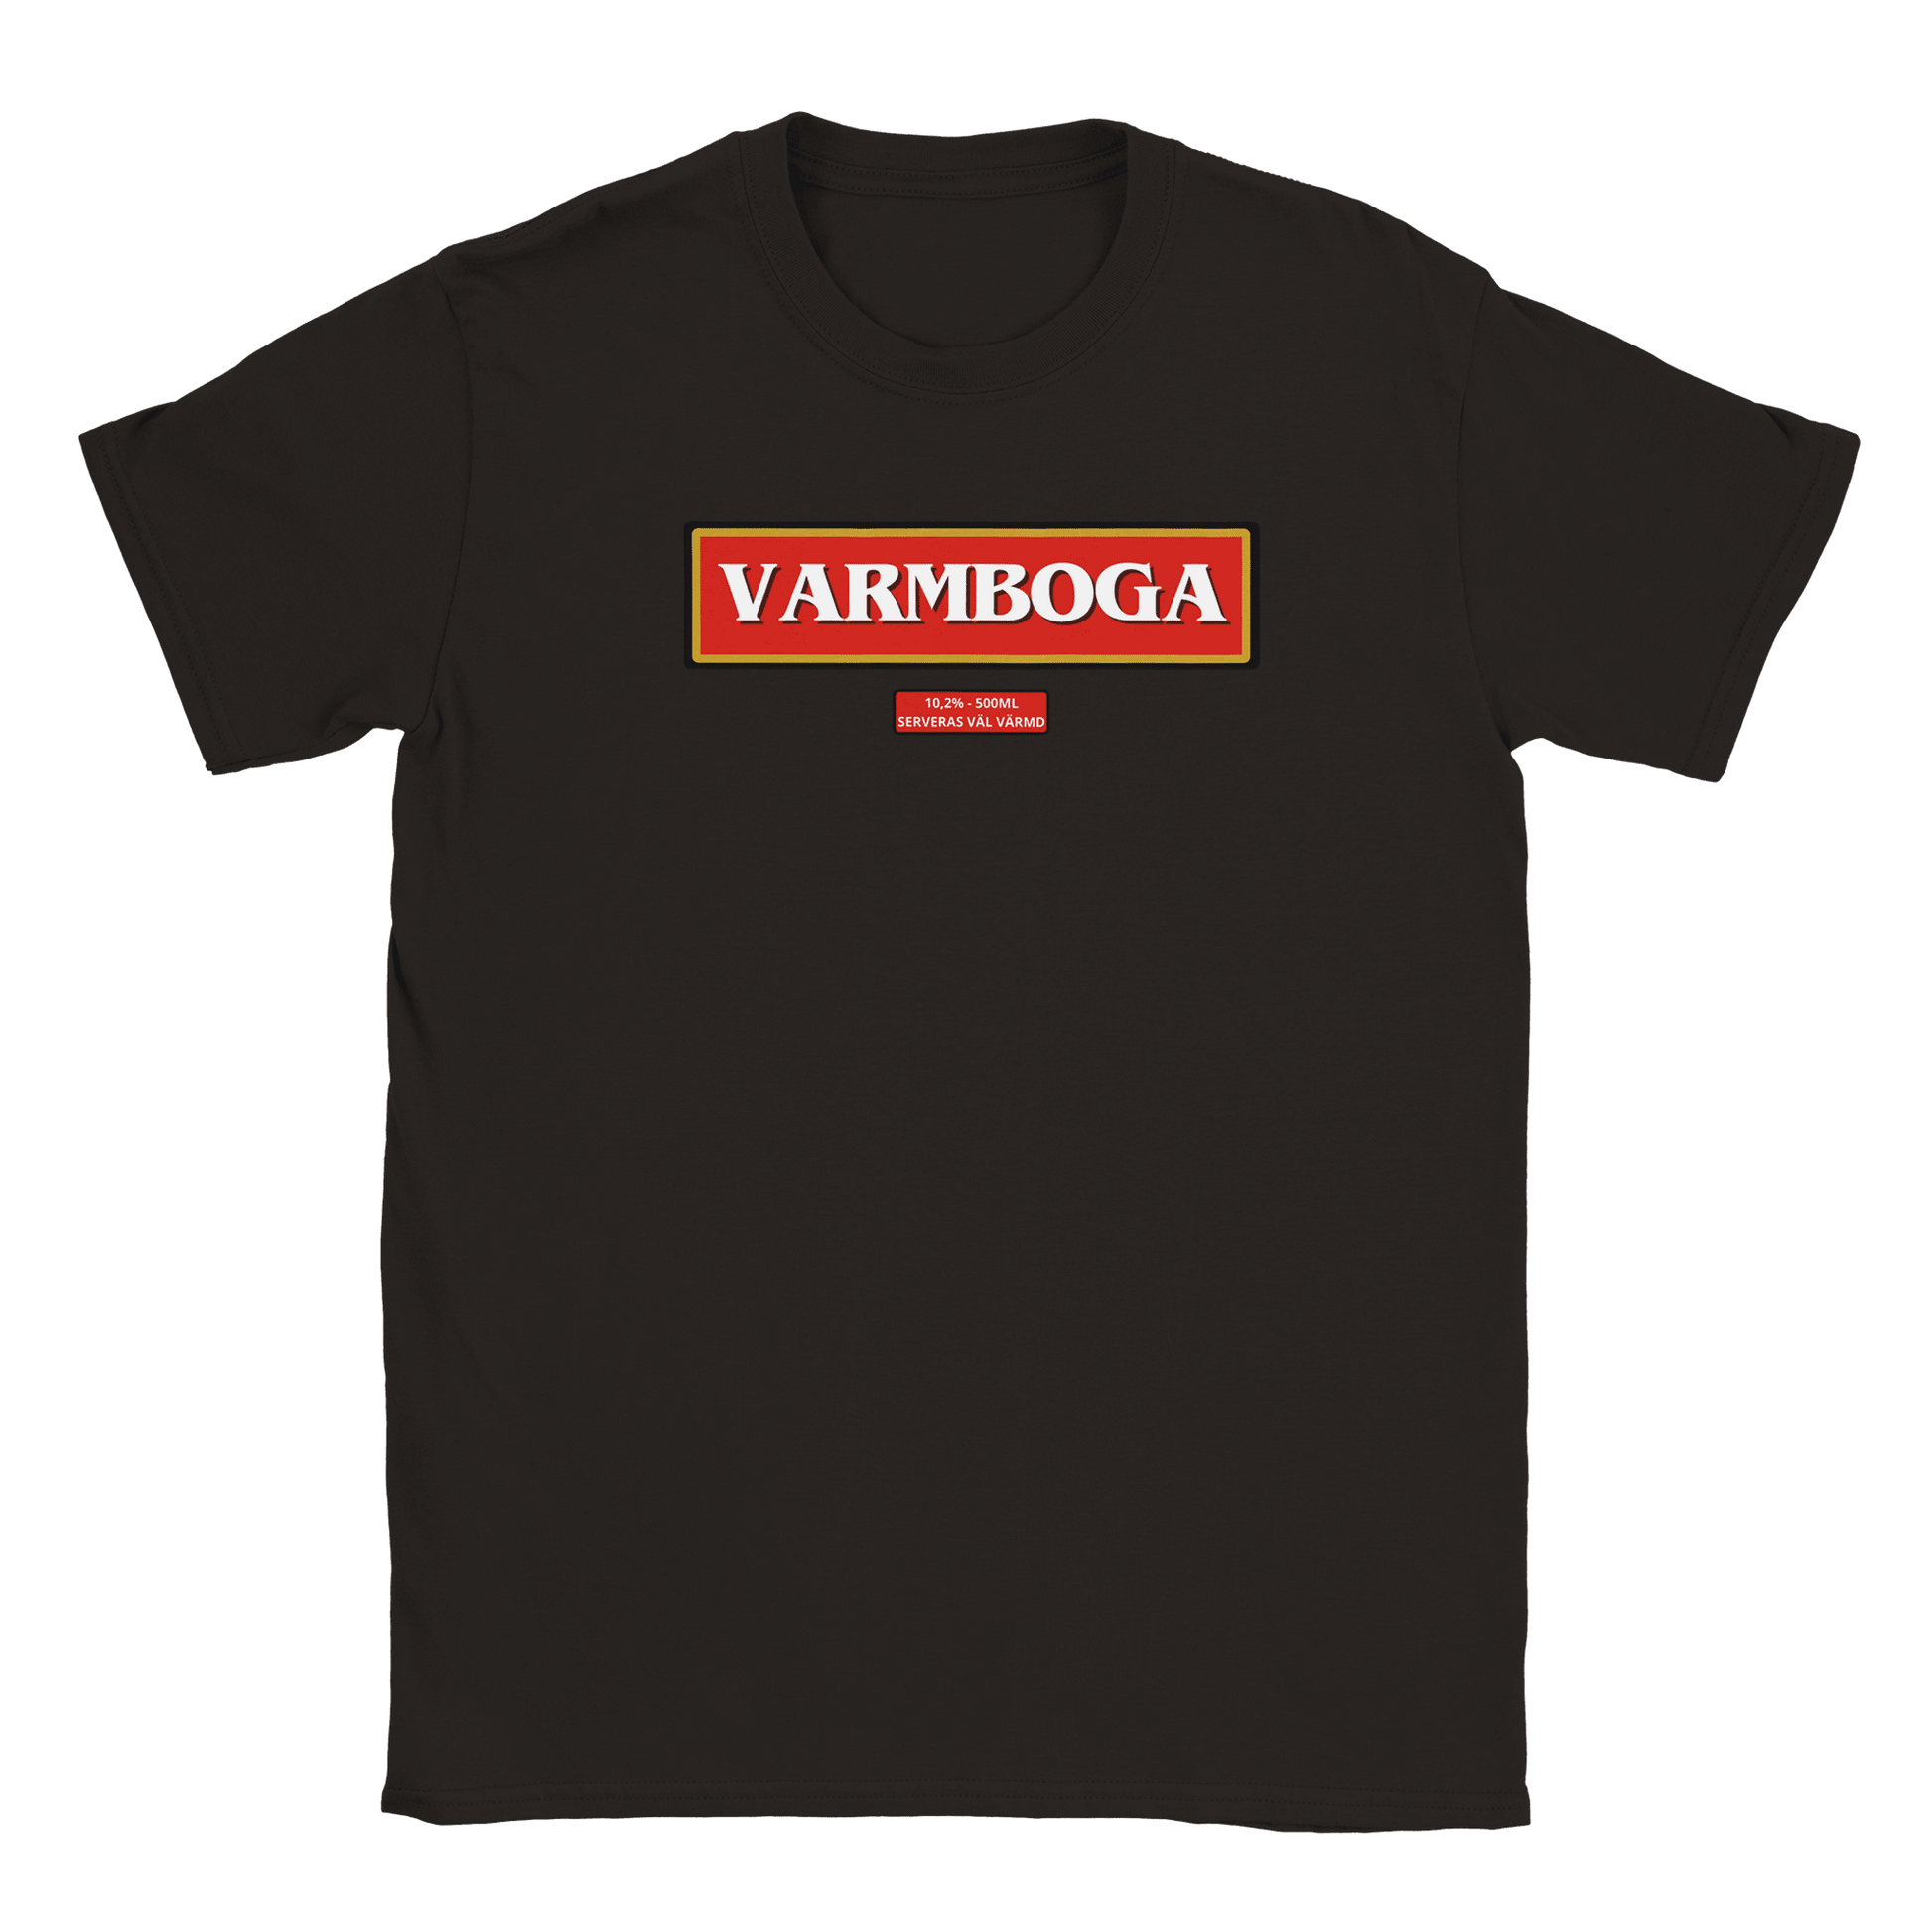 Varmboga - T-shirt Svart